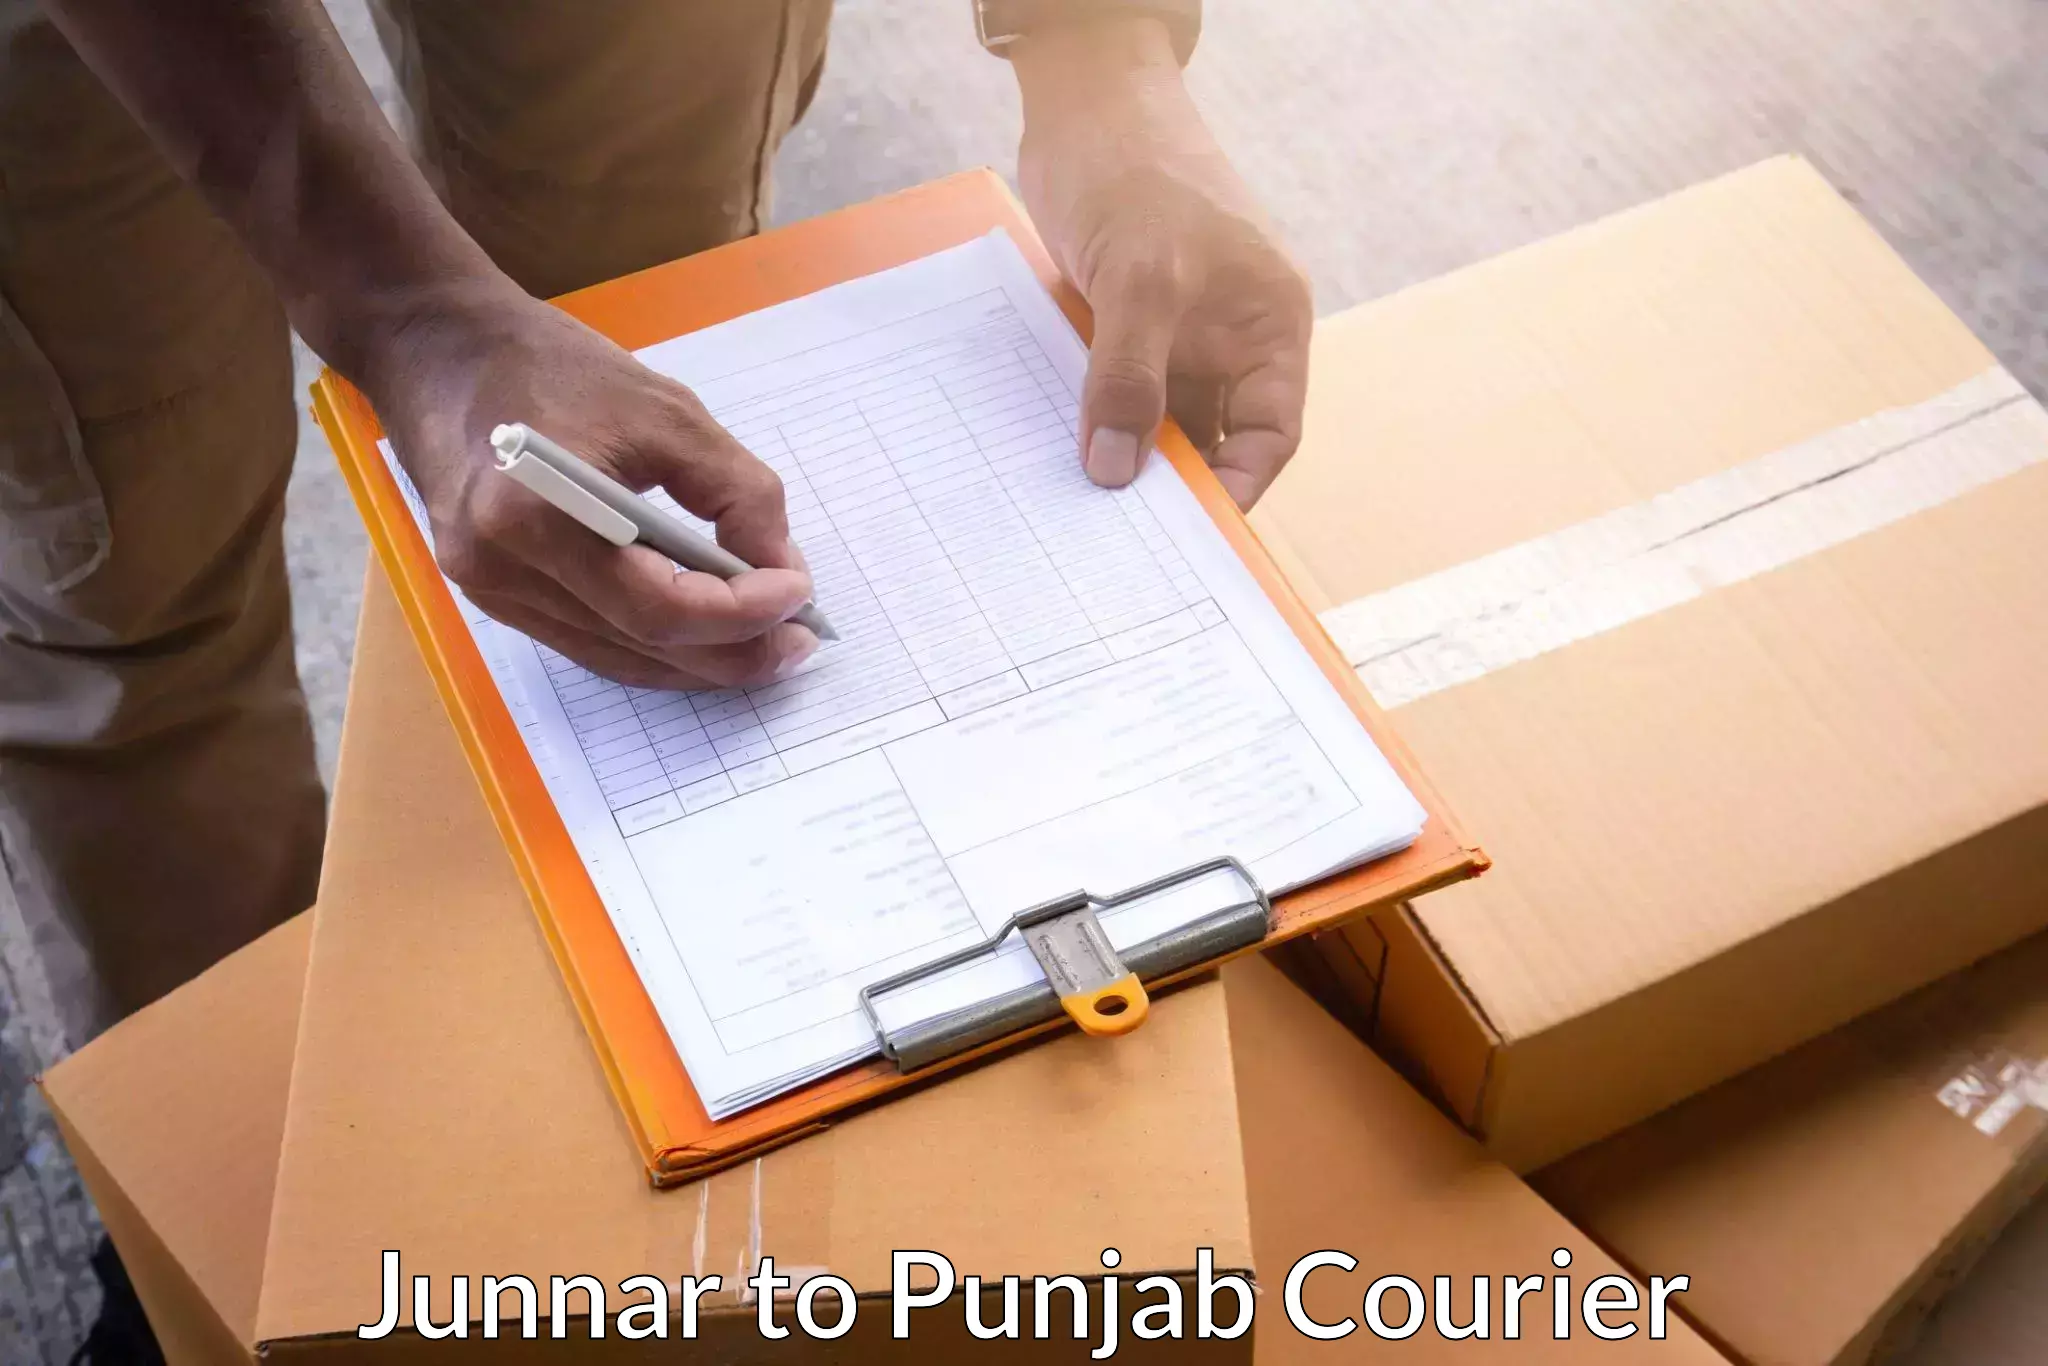 Cargo delivery service Junnar to Rupnagar